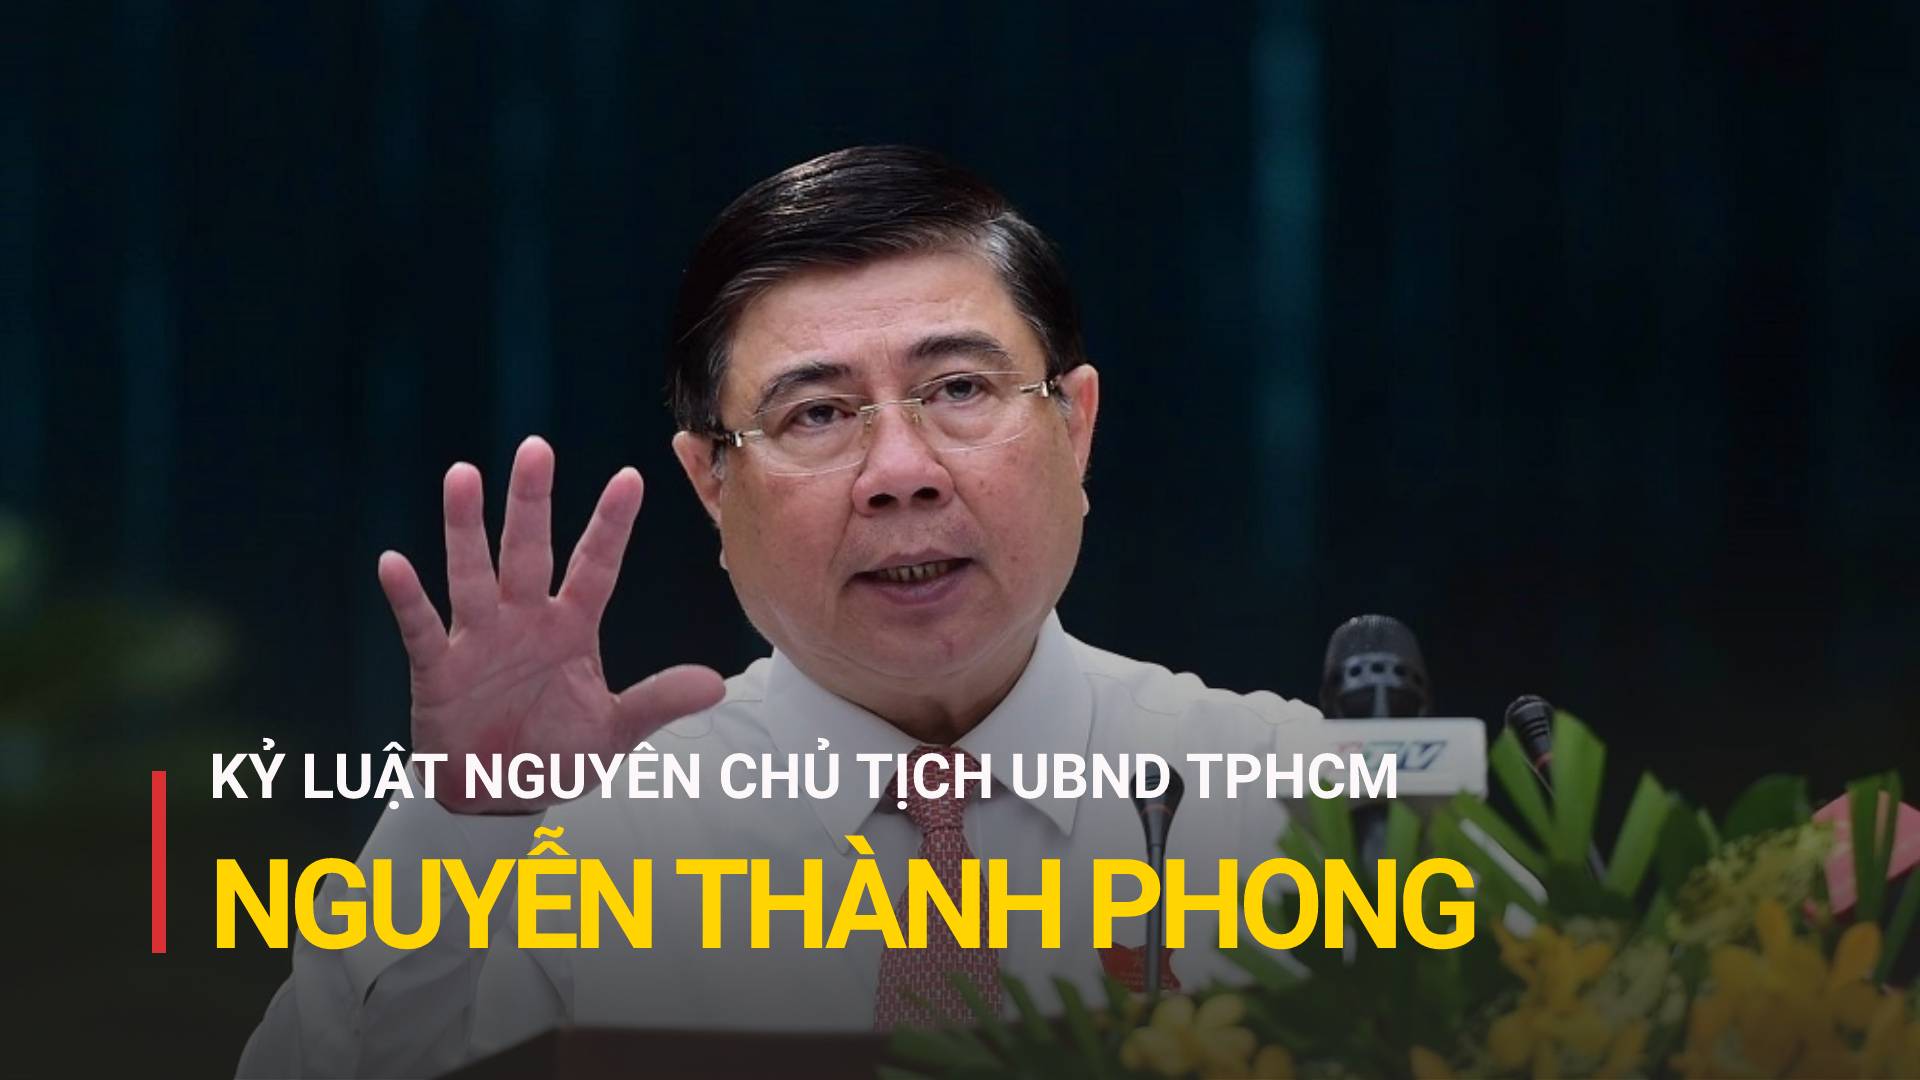 Đề nghị Bộ Chính trị xem xét kỷ luật với nguyên Chủ tịch UBND TPHCM Nguyễn Thành Phong